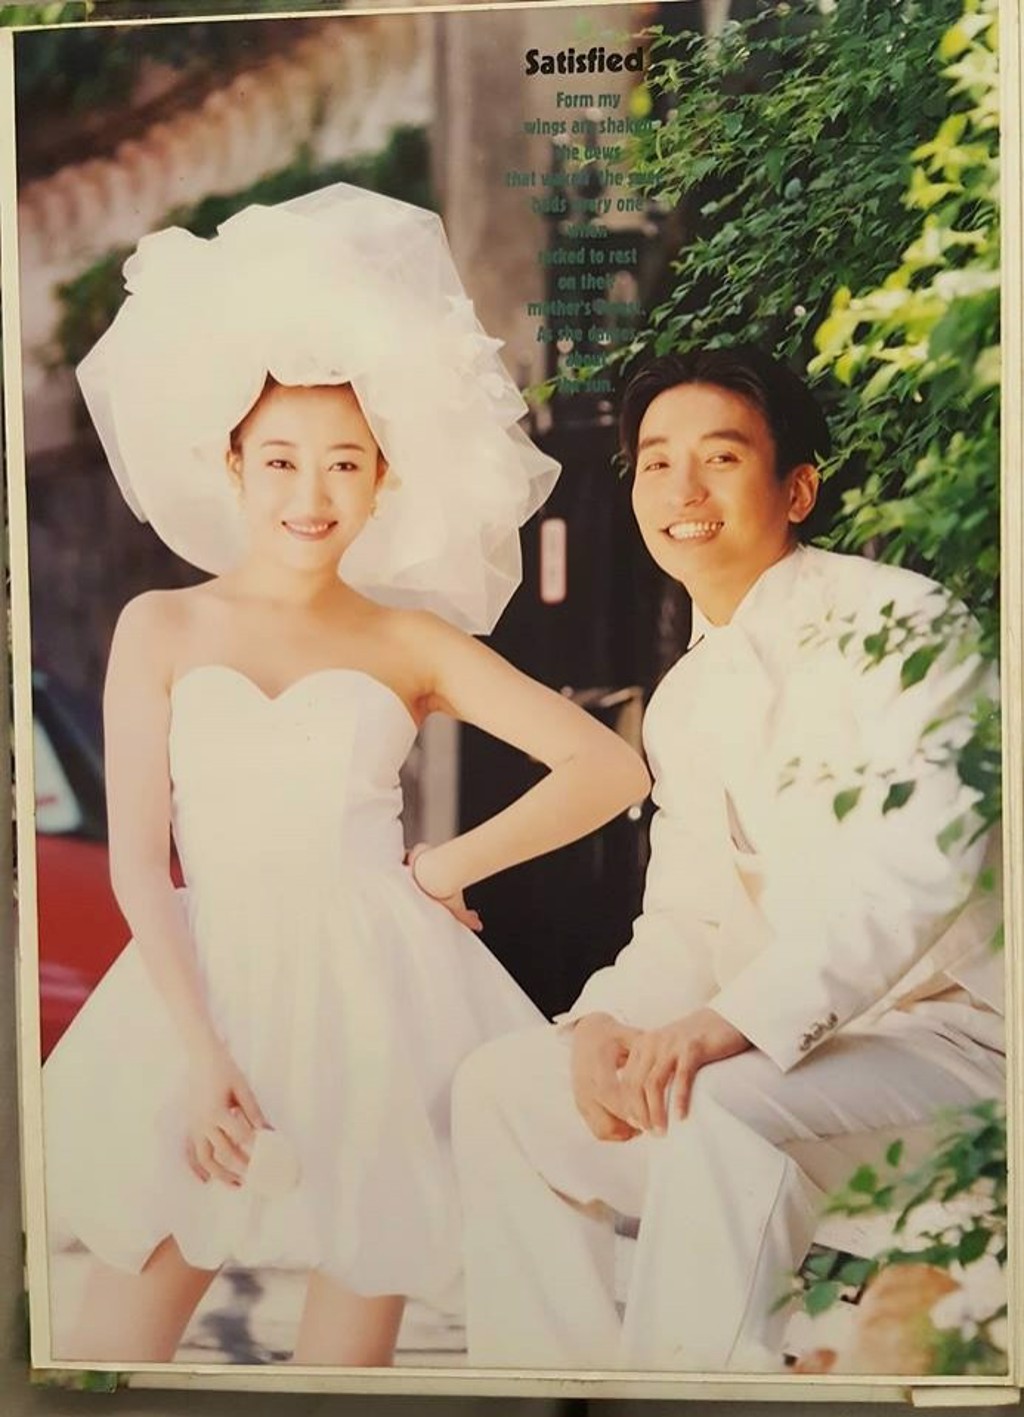 兩人婚紗照洋溢幸福笑容 (圖／翻攝自臉書「王中平和余皓然愛的小屋」)